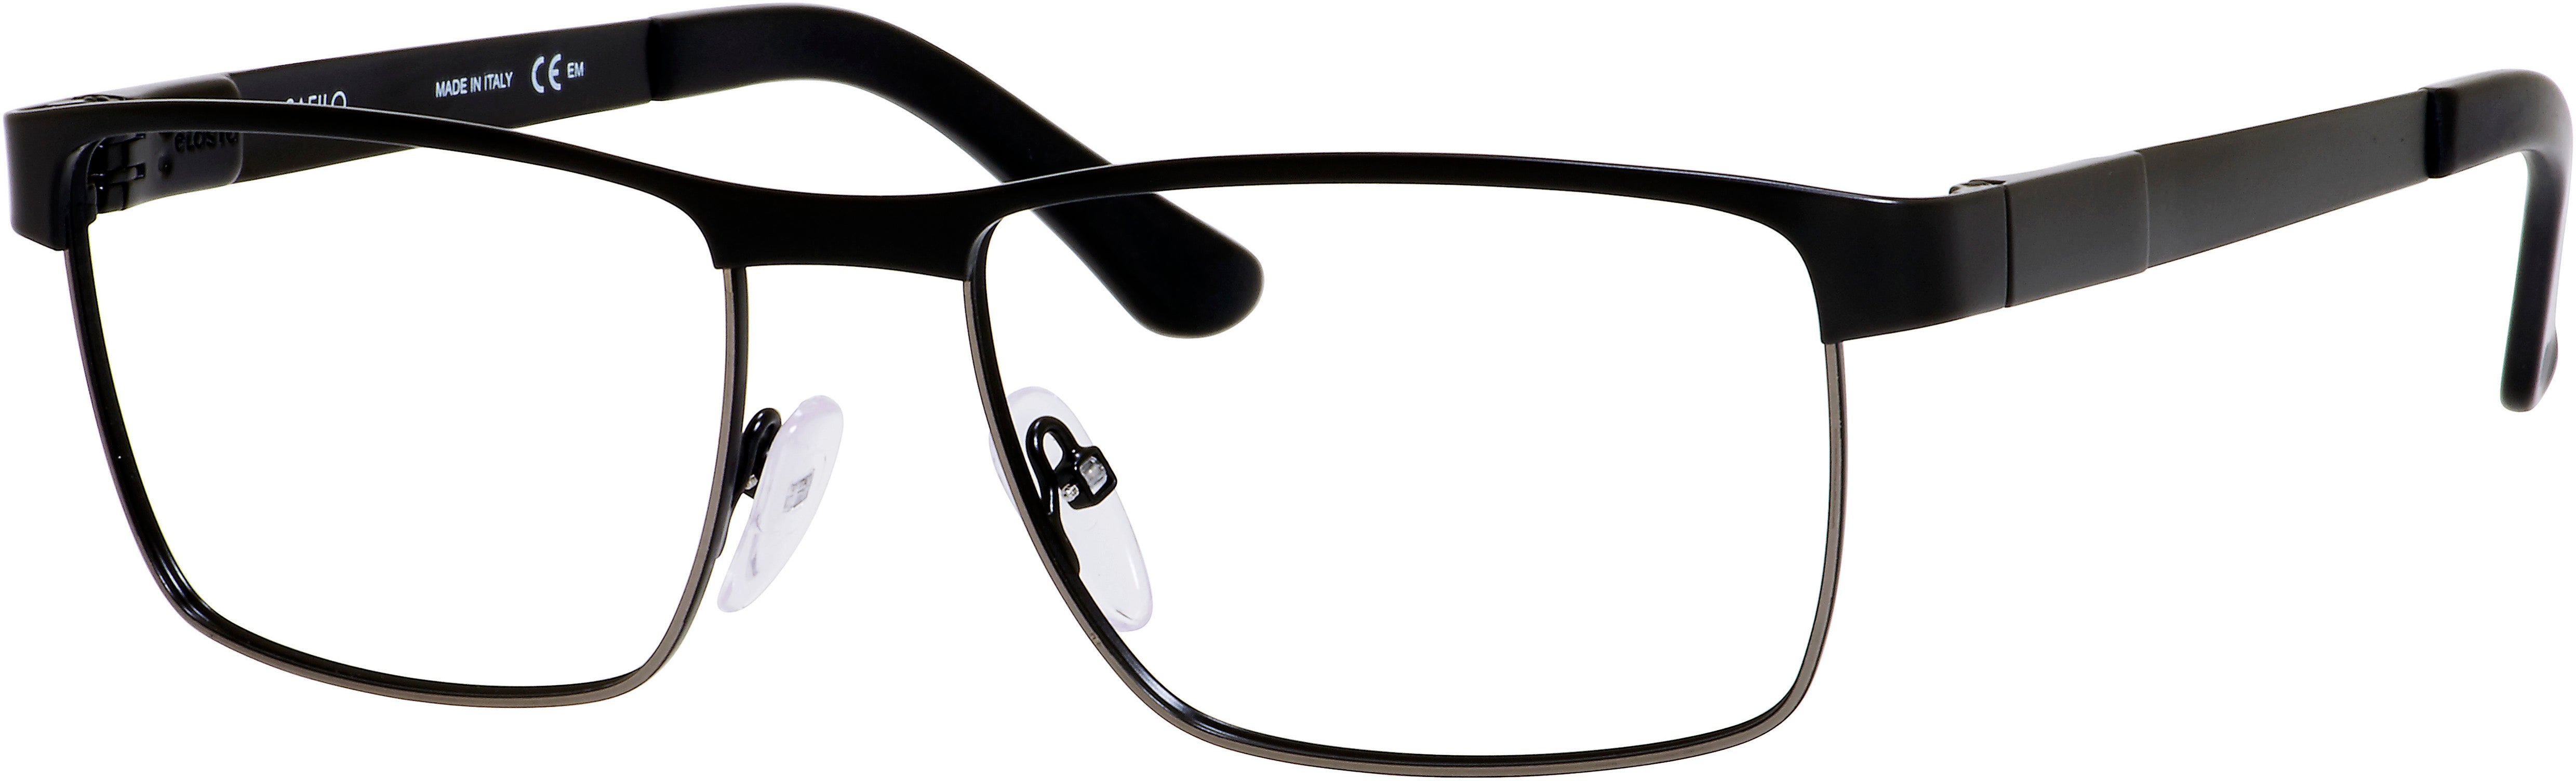  Elasta 3106 Rectangular Eyeglasses 0TI7-0TI7  Ruthenium Matte Black (00 Demo Lens)